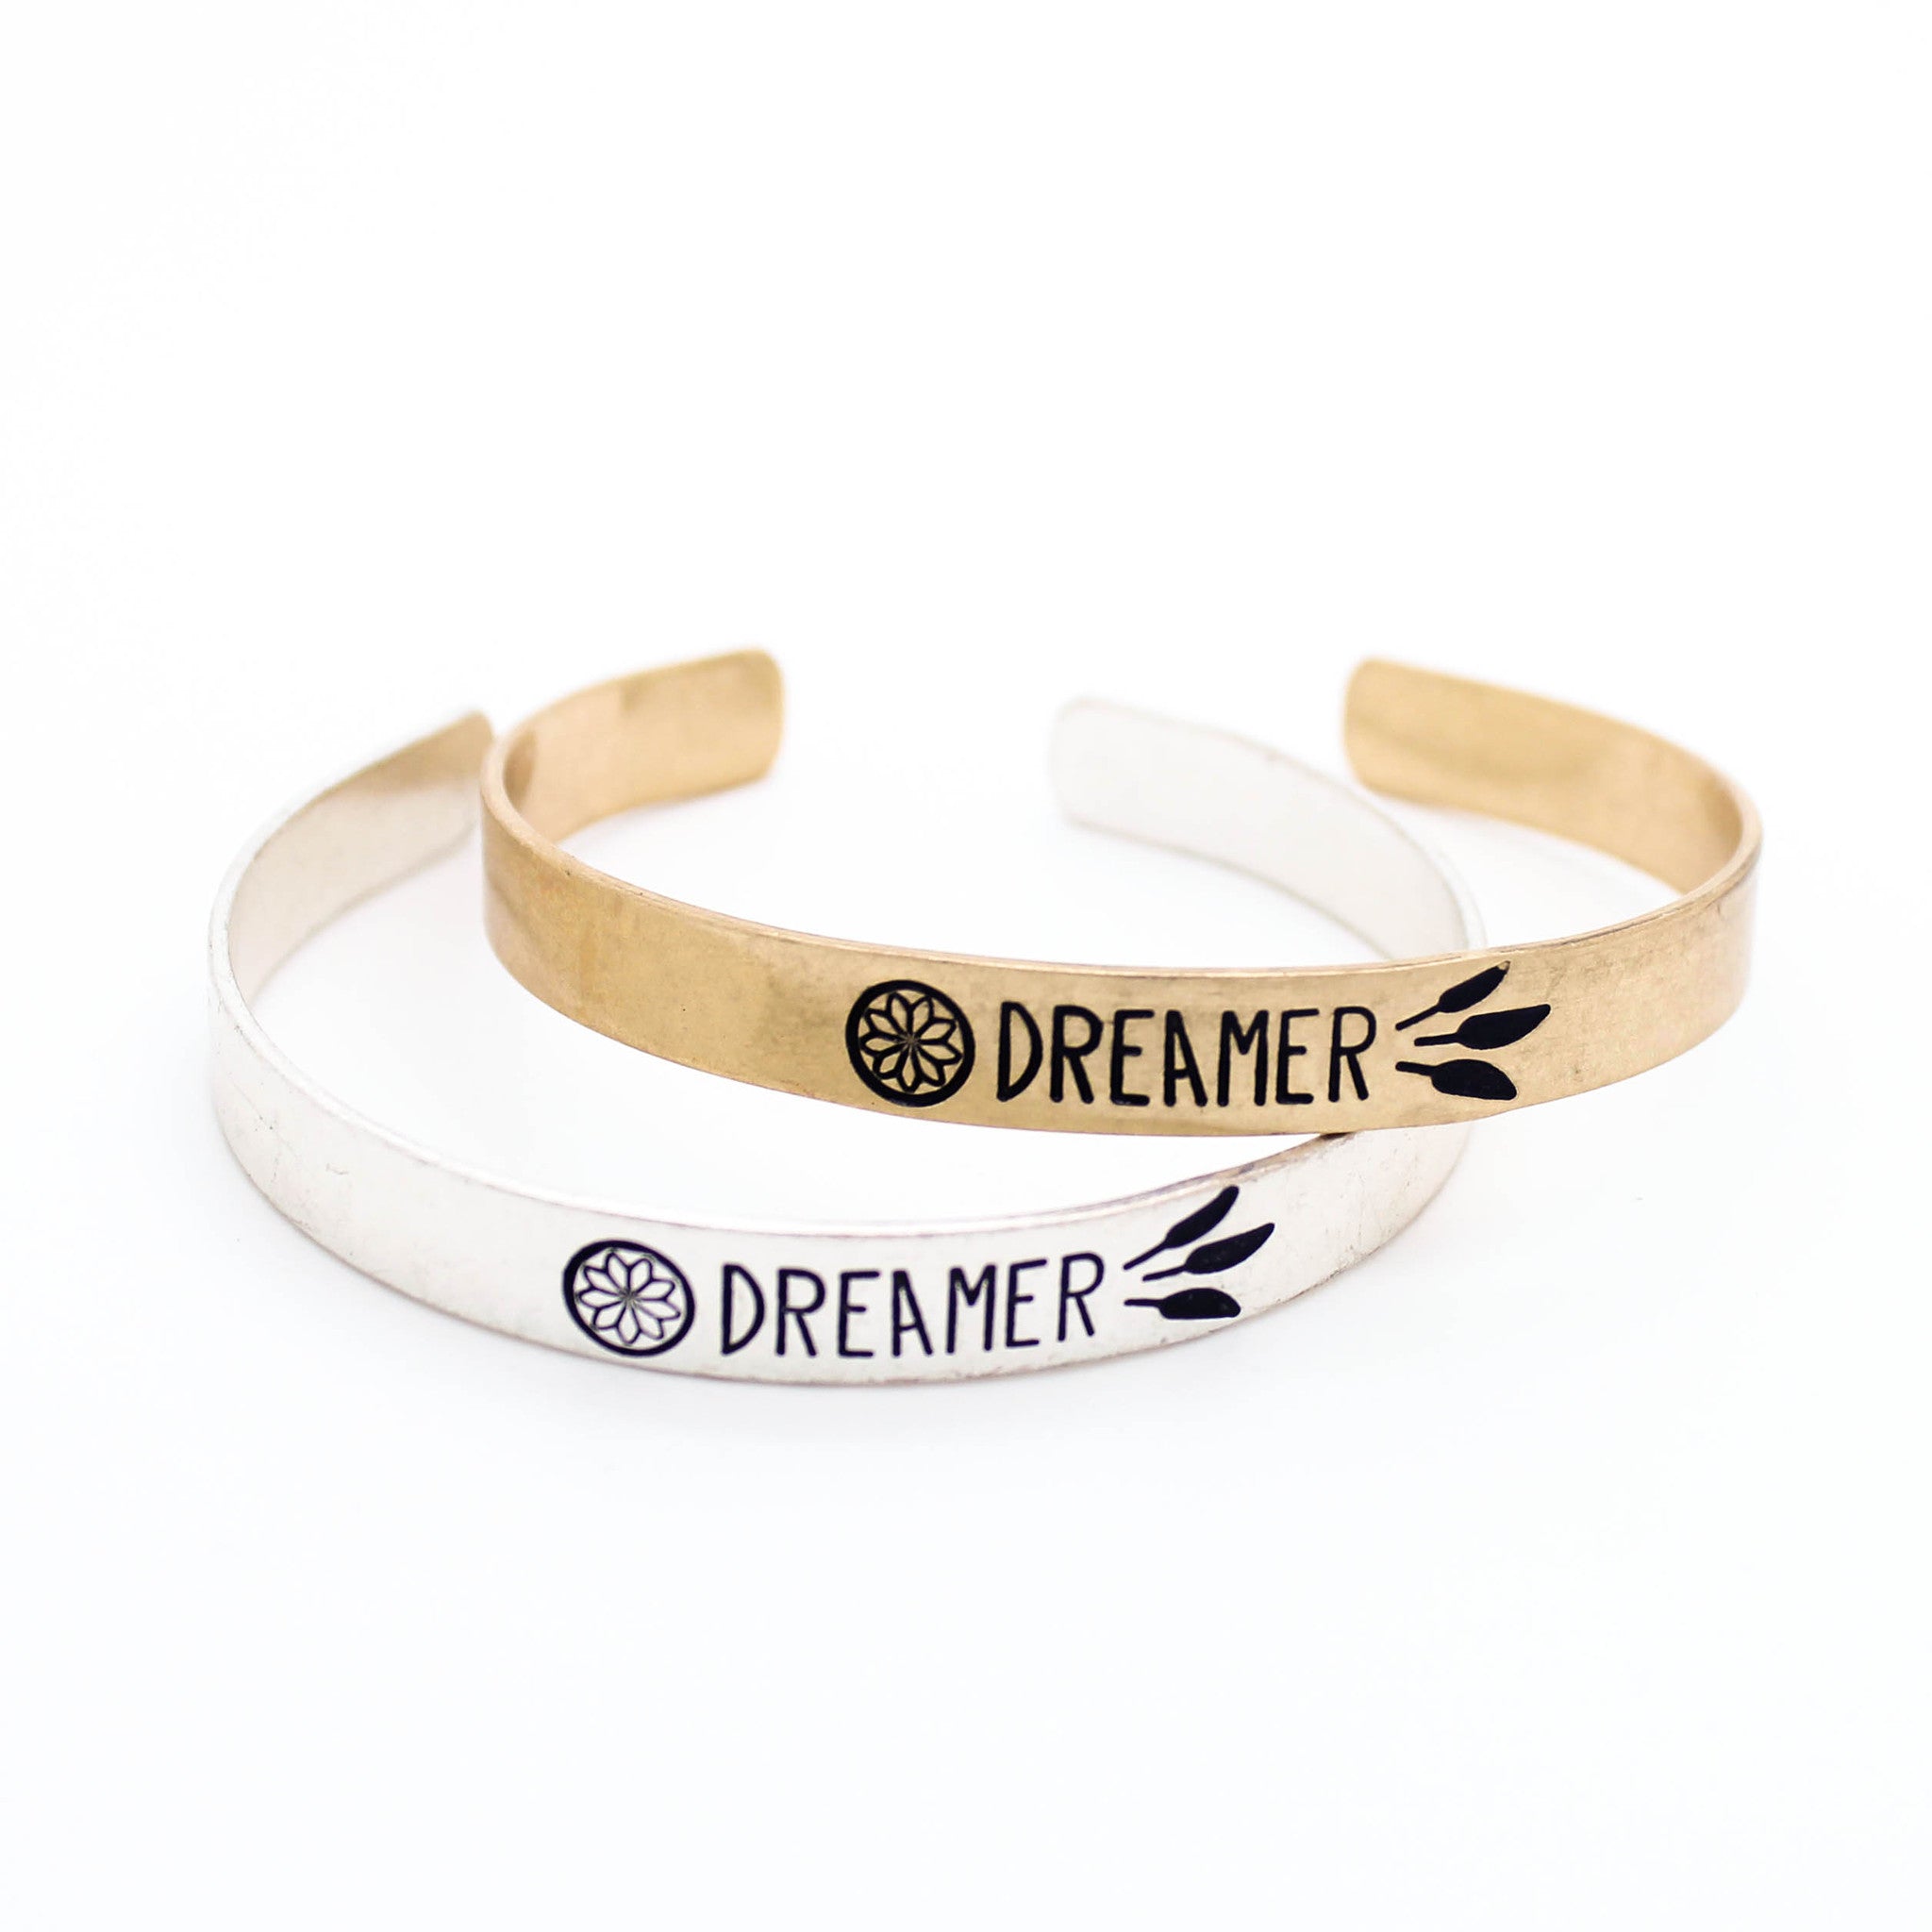 Dreamer bangle bracelet